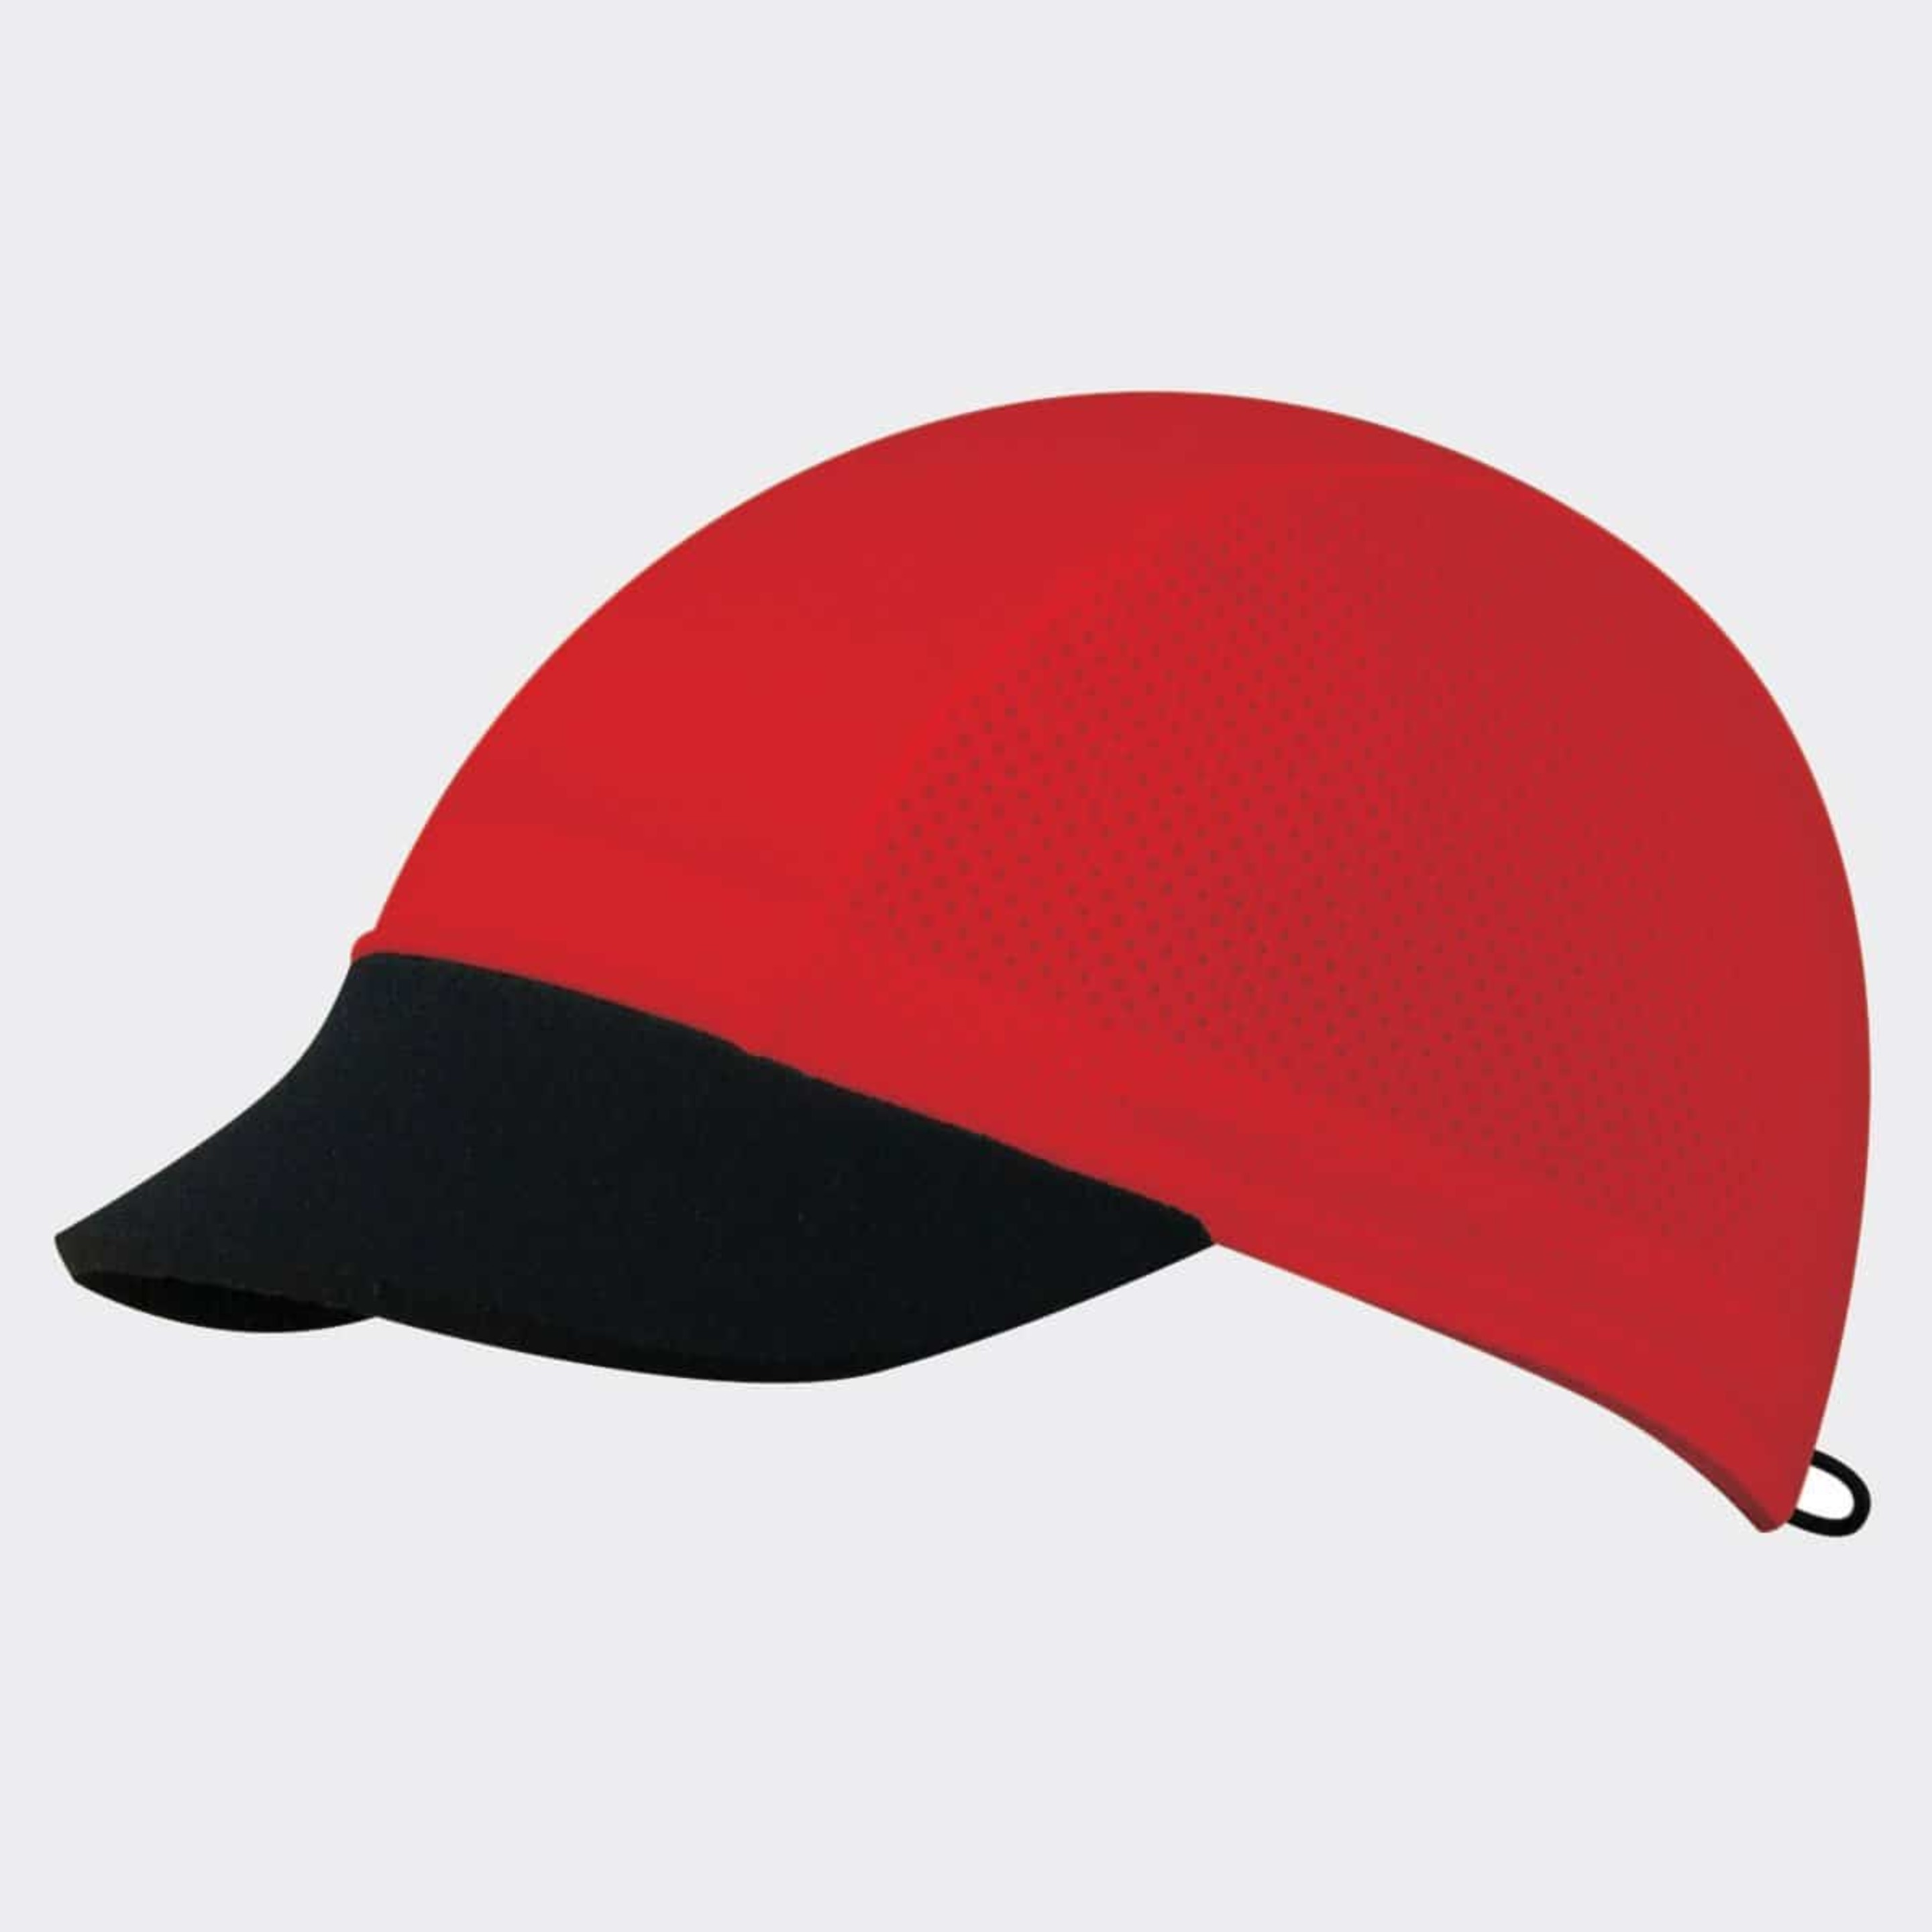 Gorra Coolcap Red - Rojo - Visera Neopreno  MKP